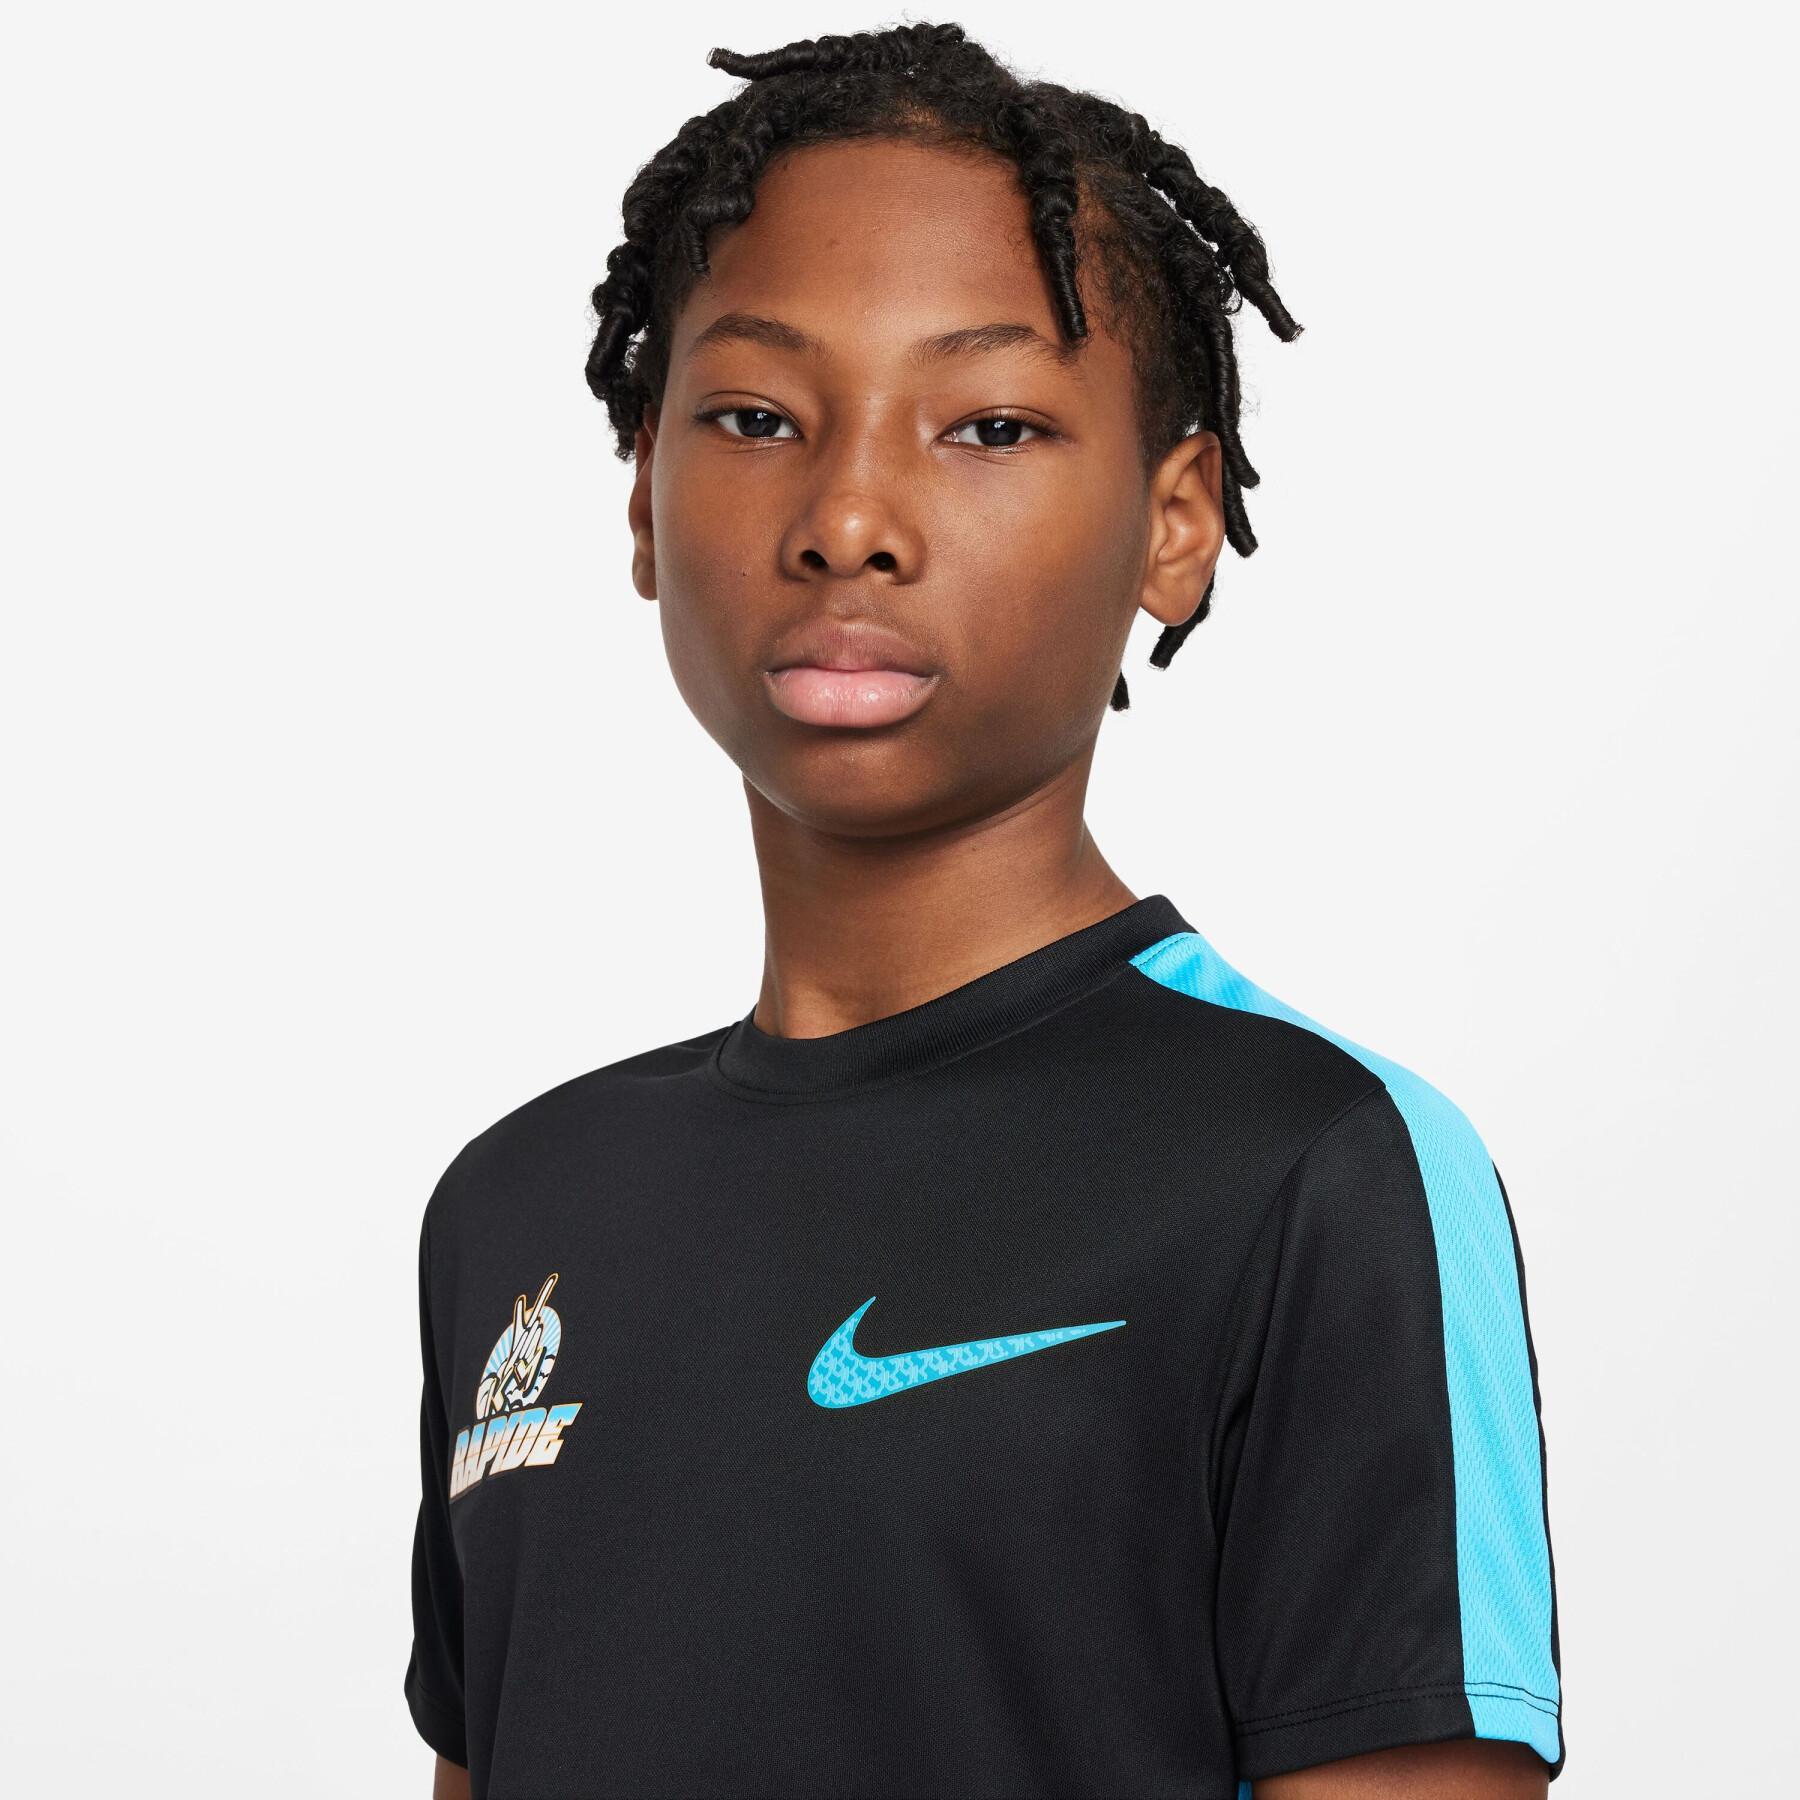 Kid's jersey Nike Kylian Mbappé